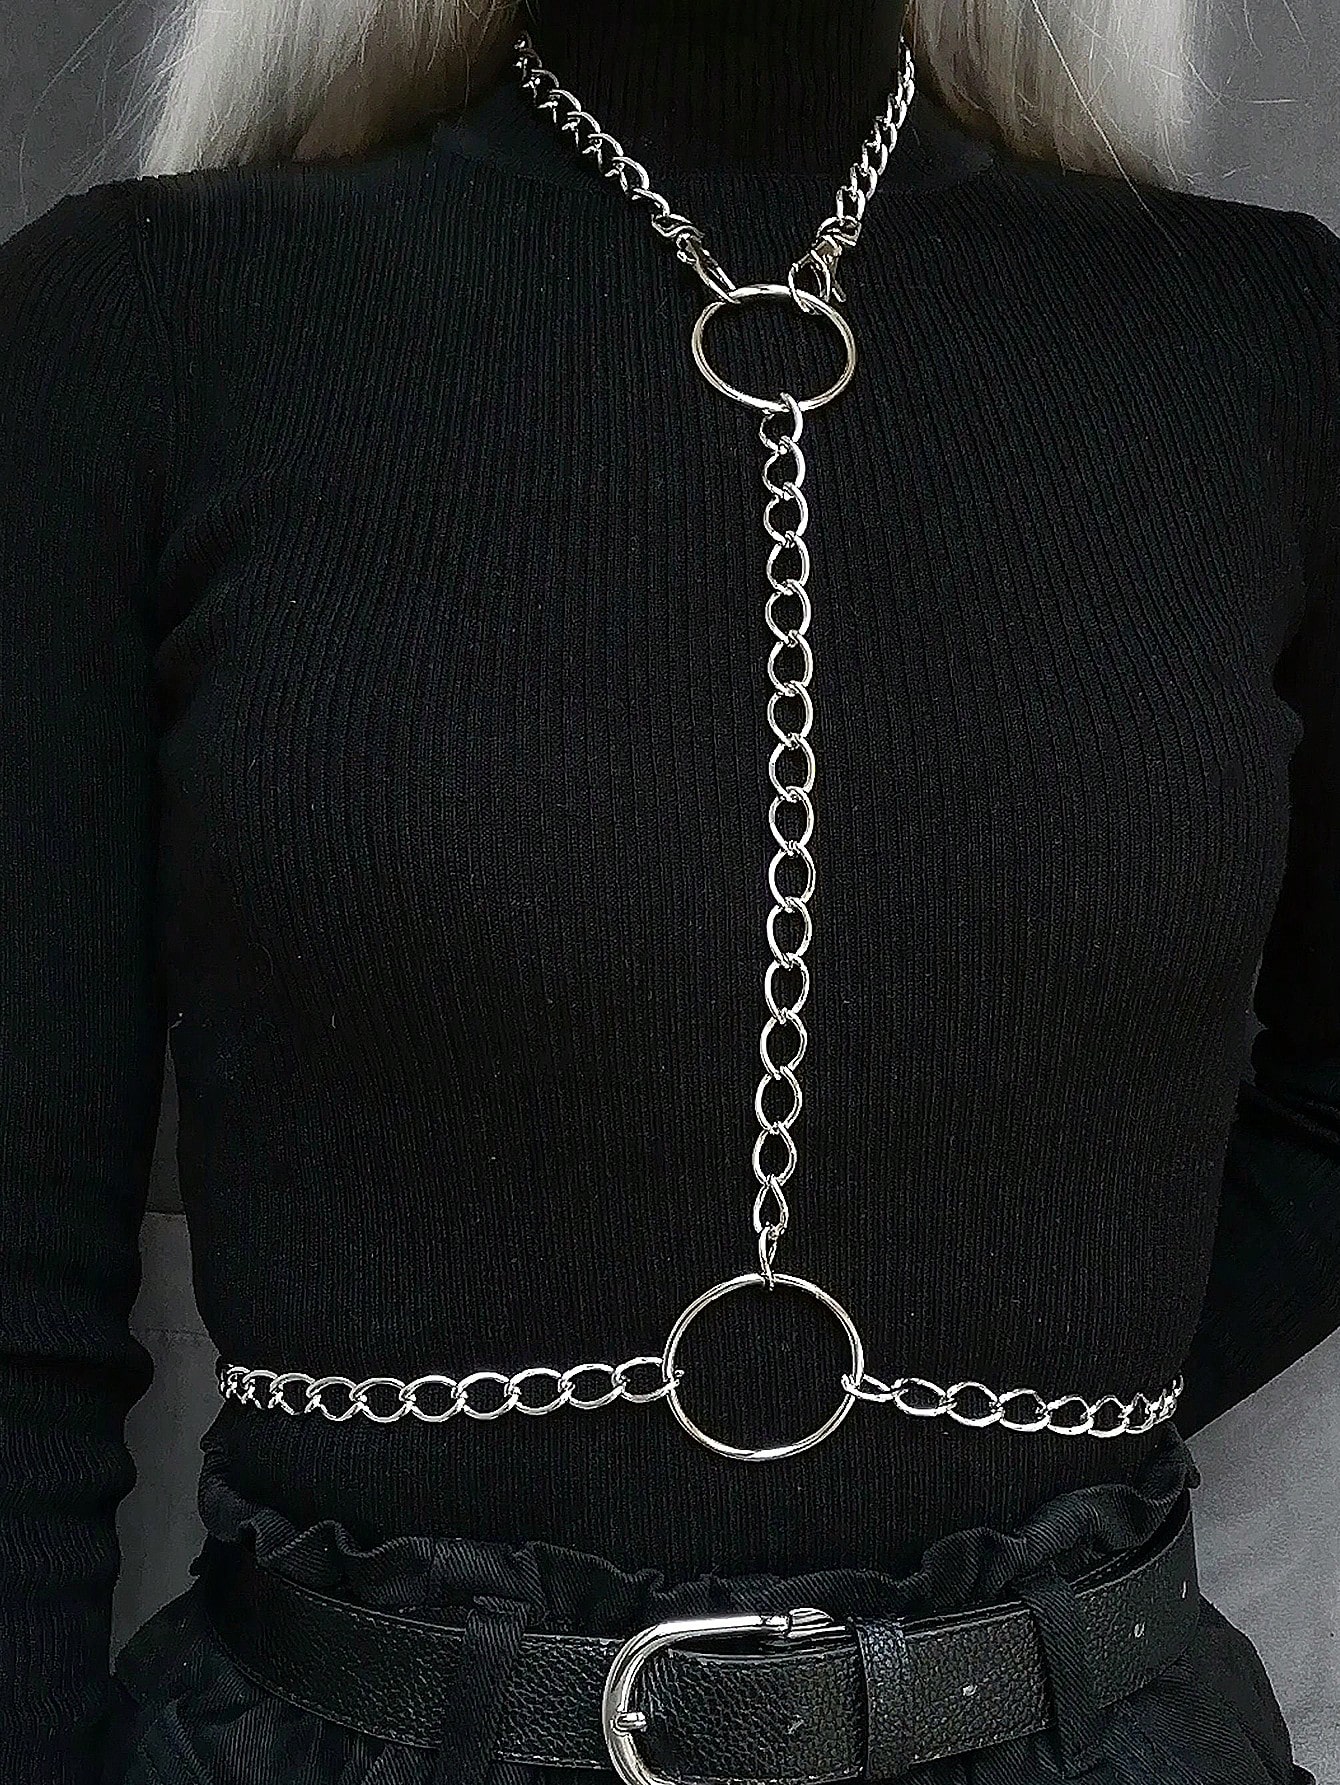 1 шт. женская сексуальная серебряная круглая цепочка в готическом стиле с геометрическим рисунком, серебро цепочка на шею женская чокер цепочка женская однослойная золотистая модное ожерелье в офисном стиле с надписью love